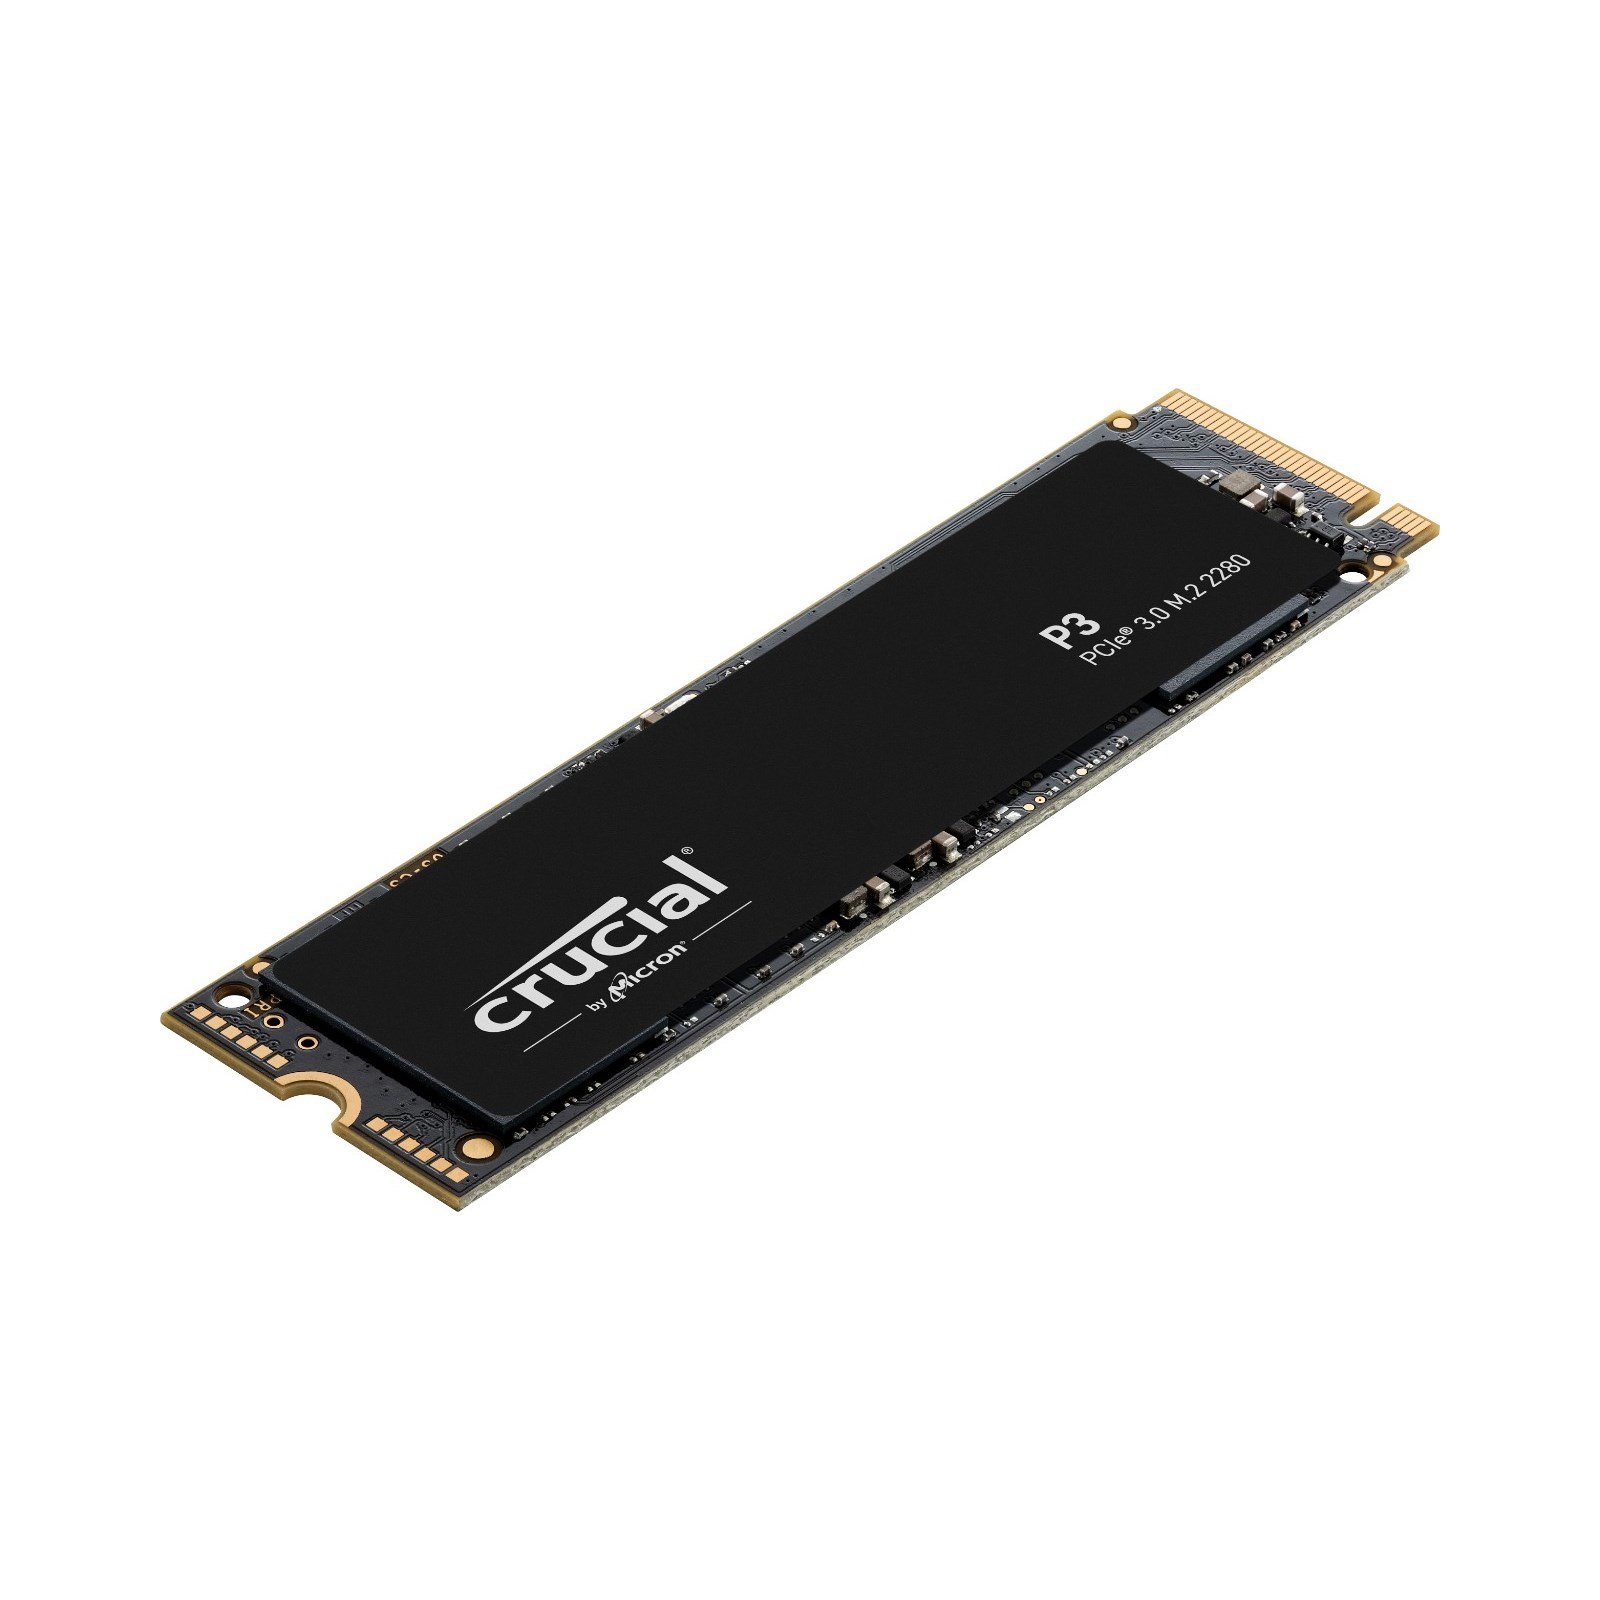 M.2 2280 PCIe Gen 3 x4 NVMe SSD, 2TB (DIG-M2N220004)